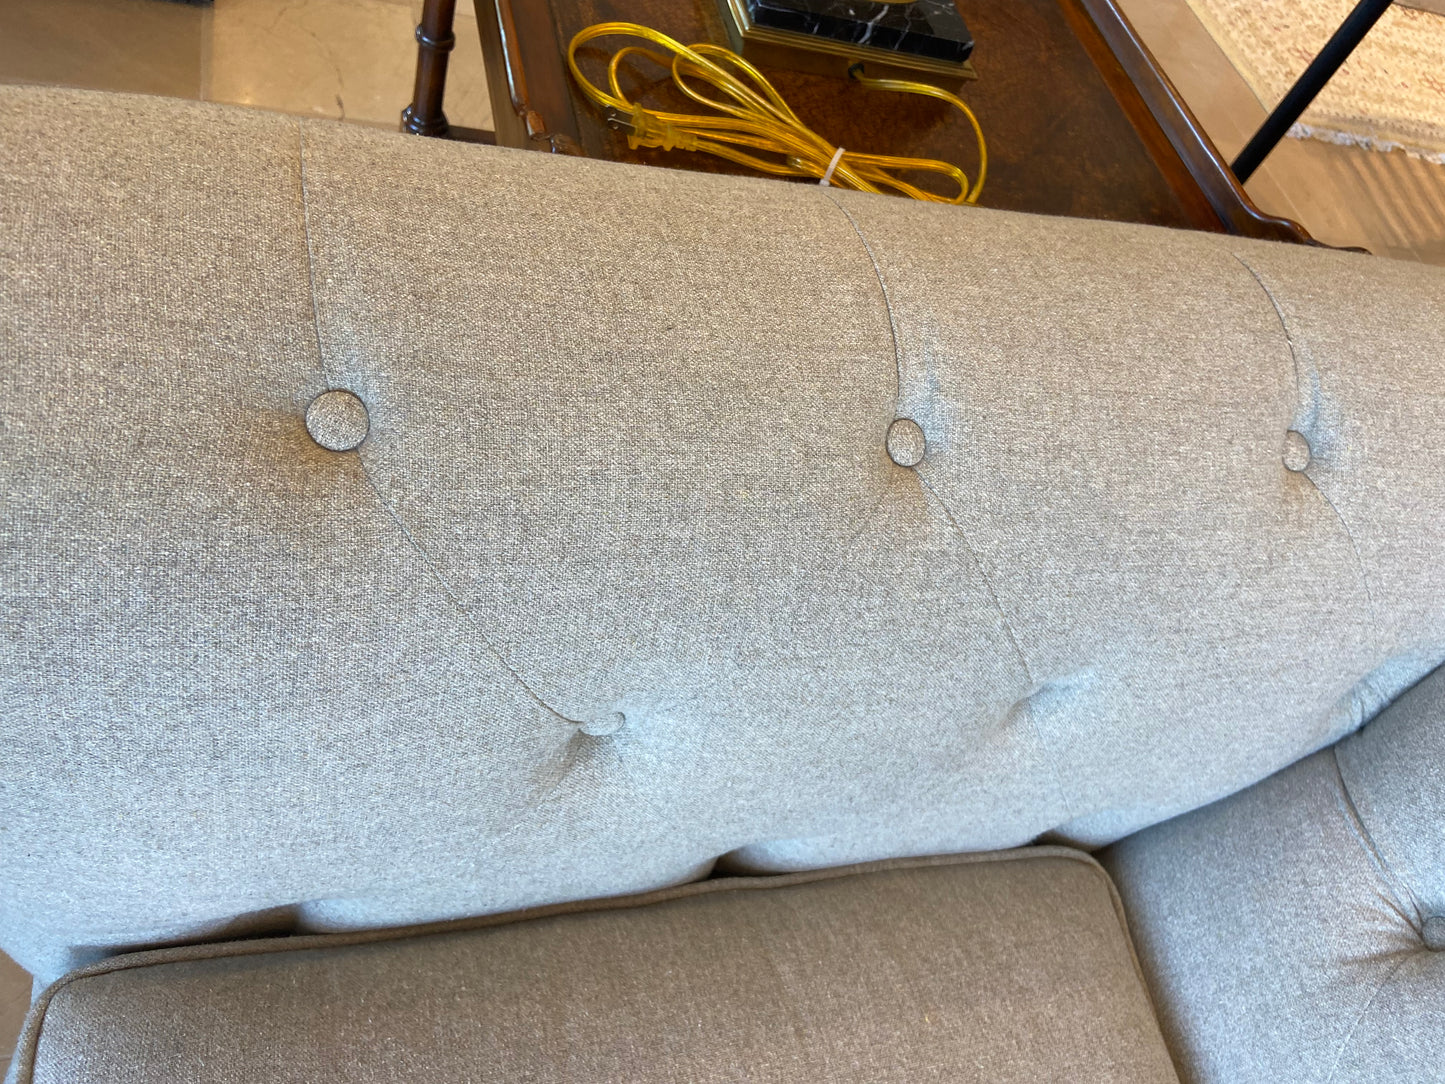 Hickorycraft Sofa (25195)